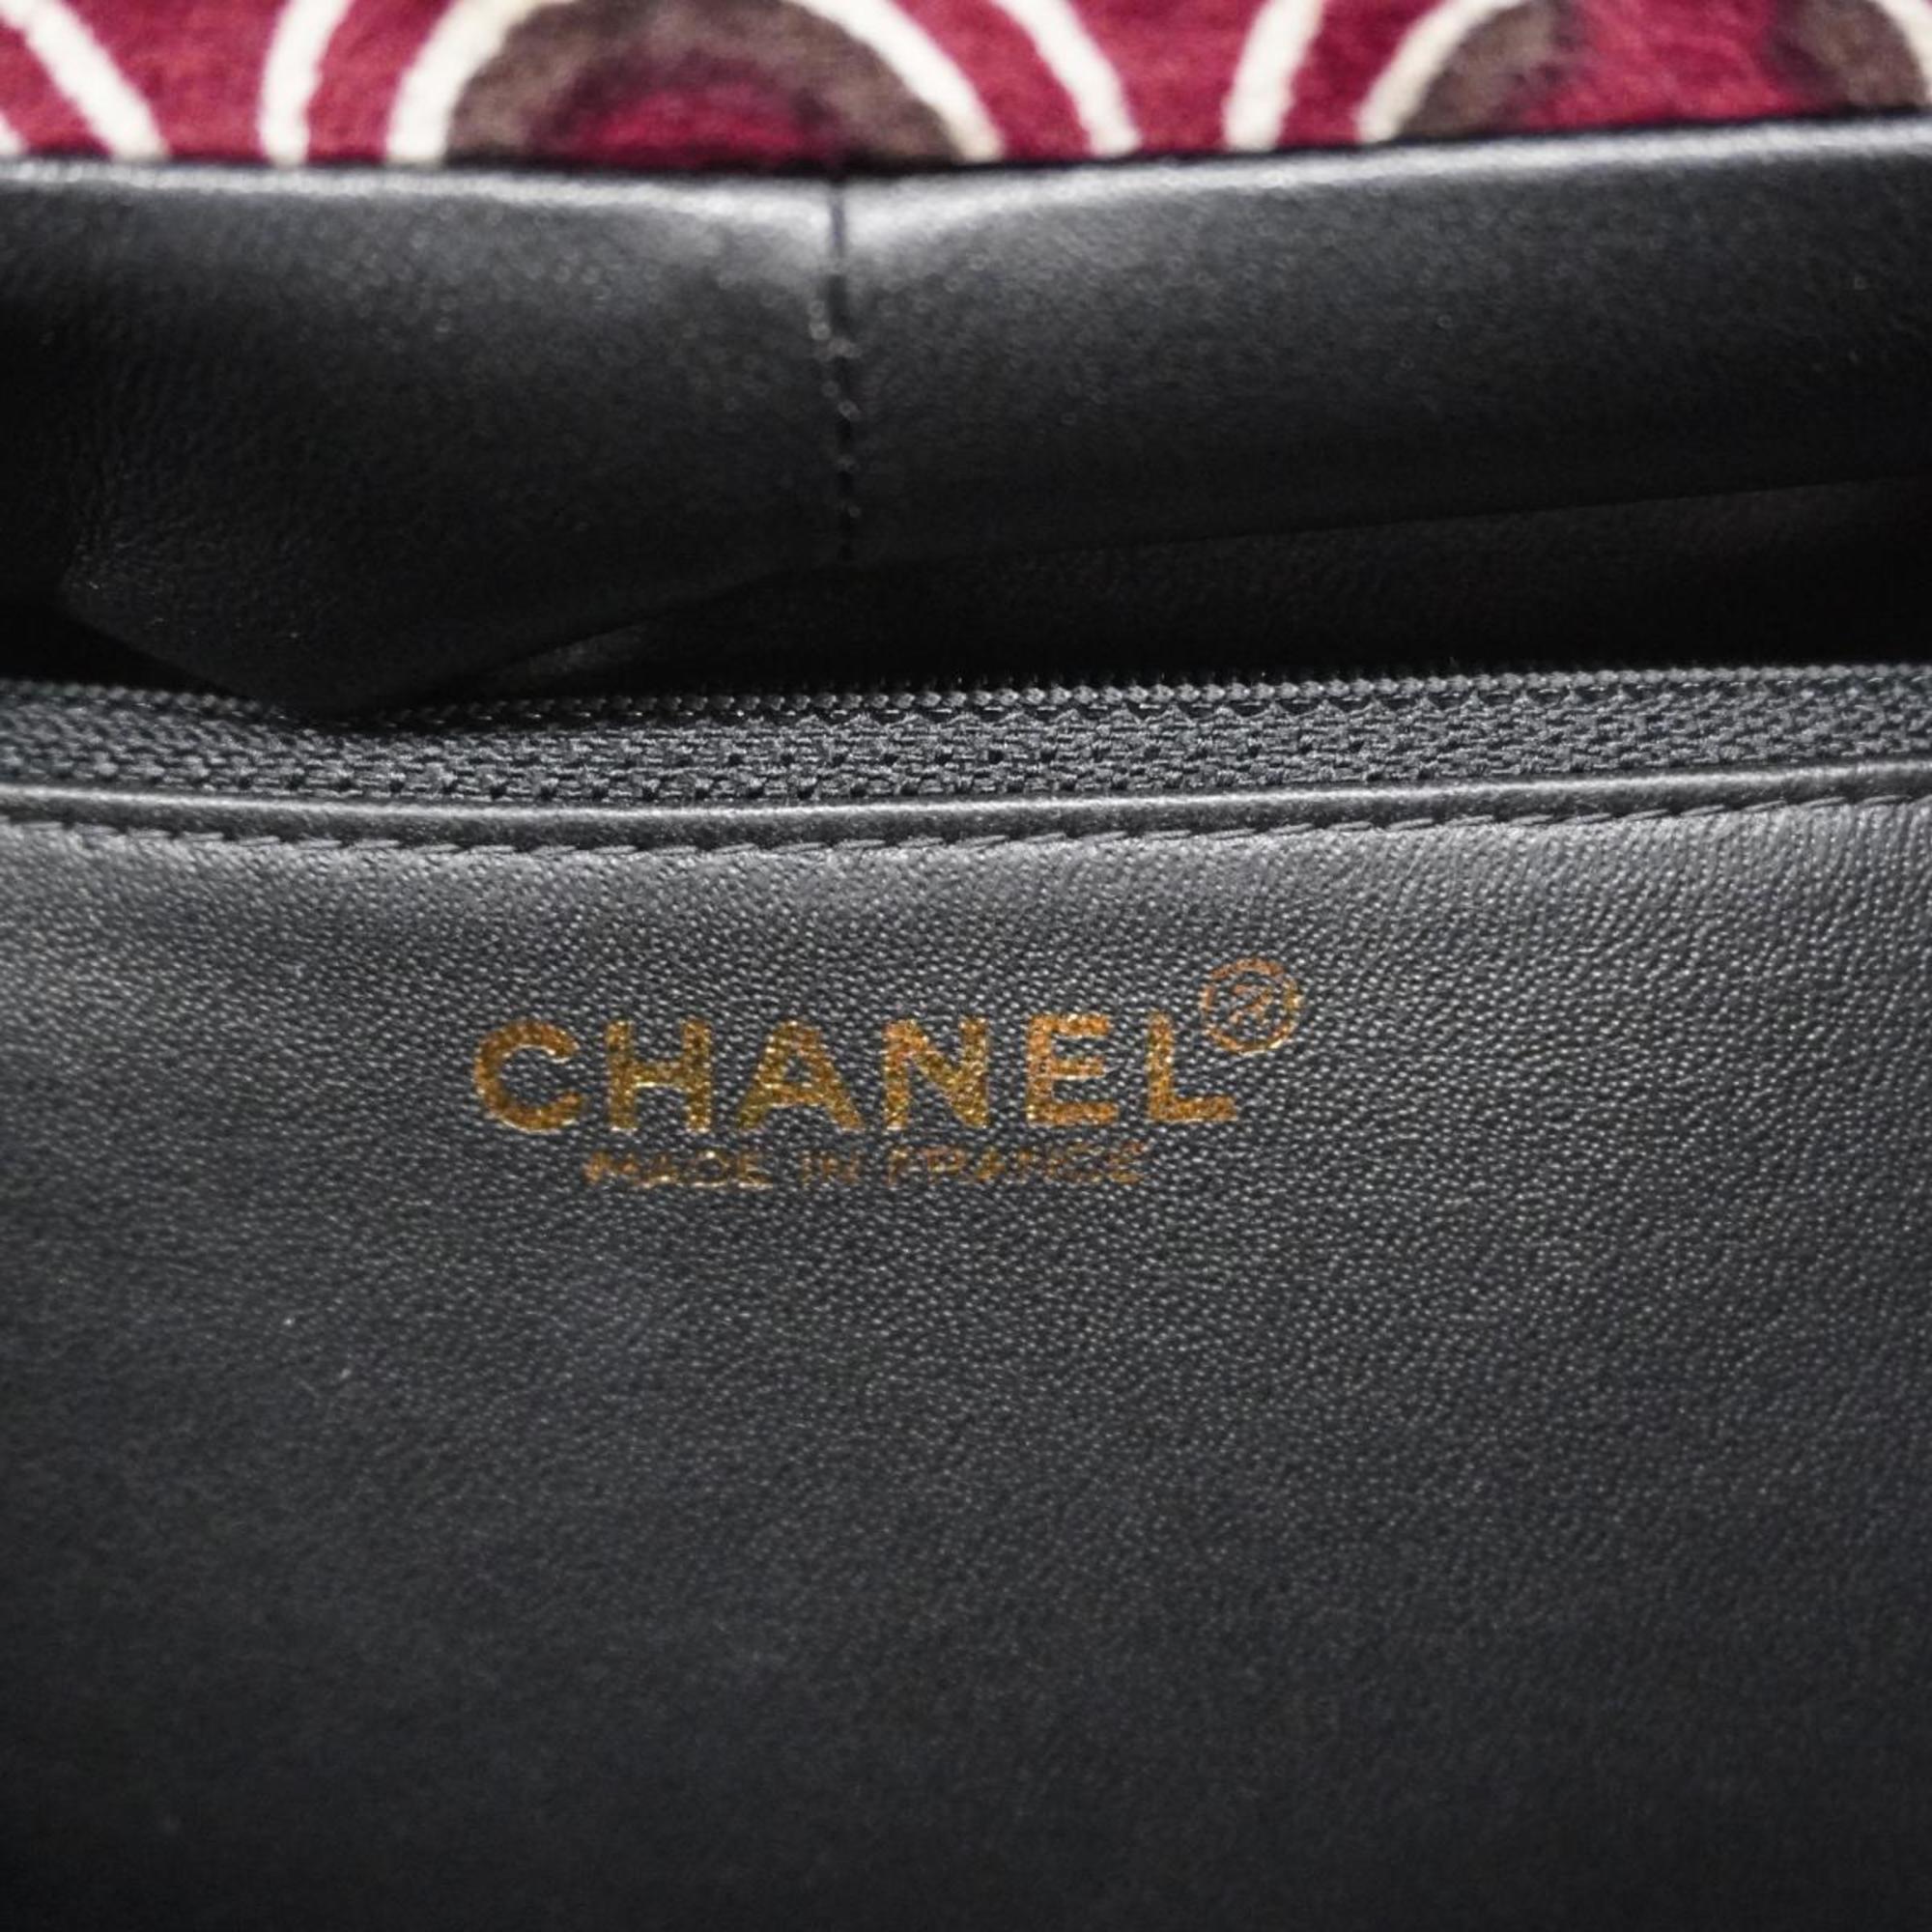 シャネル(Chanel) シャネル ハンドバッグ ベロア レッド シャンパン レディース